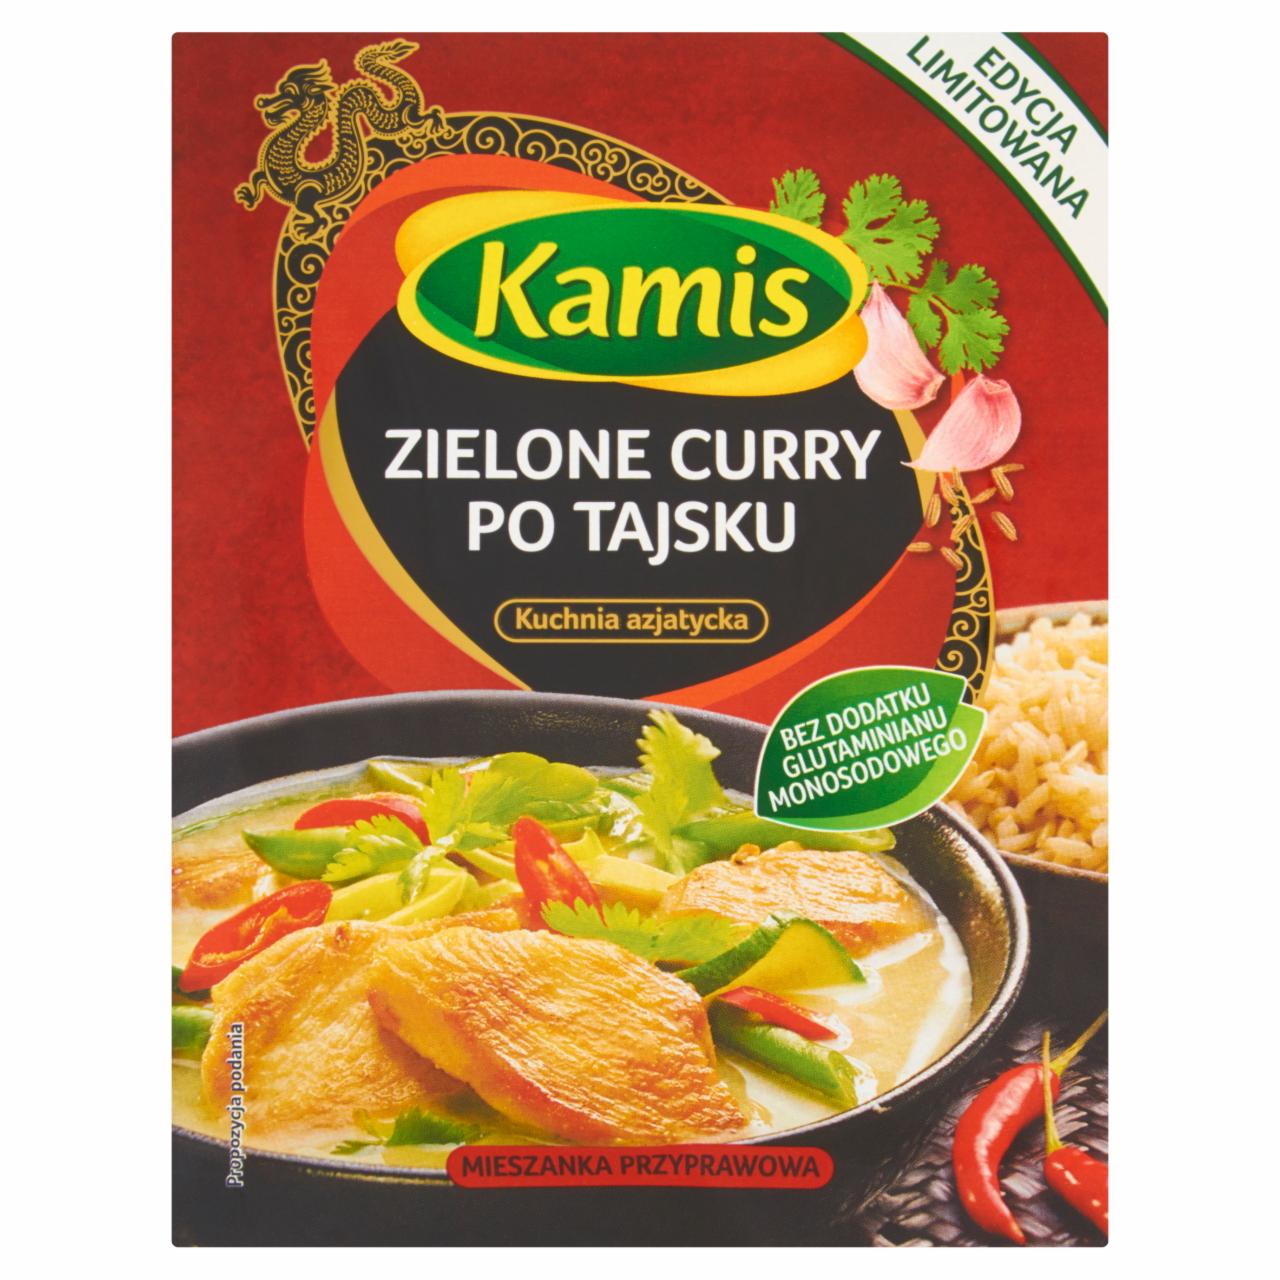 Zdjęcia - Kamis Kuchnia azjatycka Zielone curry po tajsku Mieszanka przyprawowa 22 g